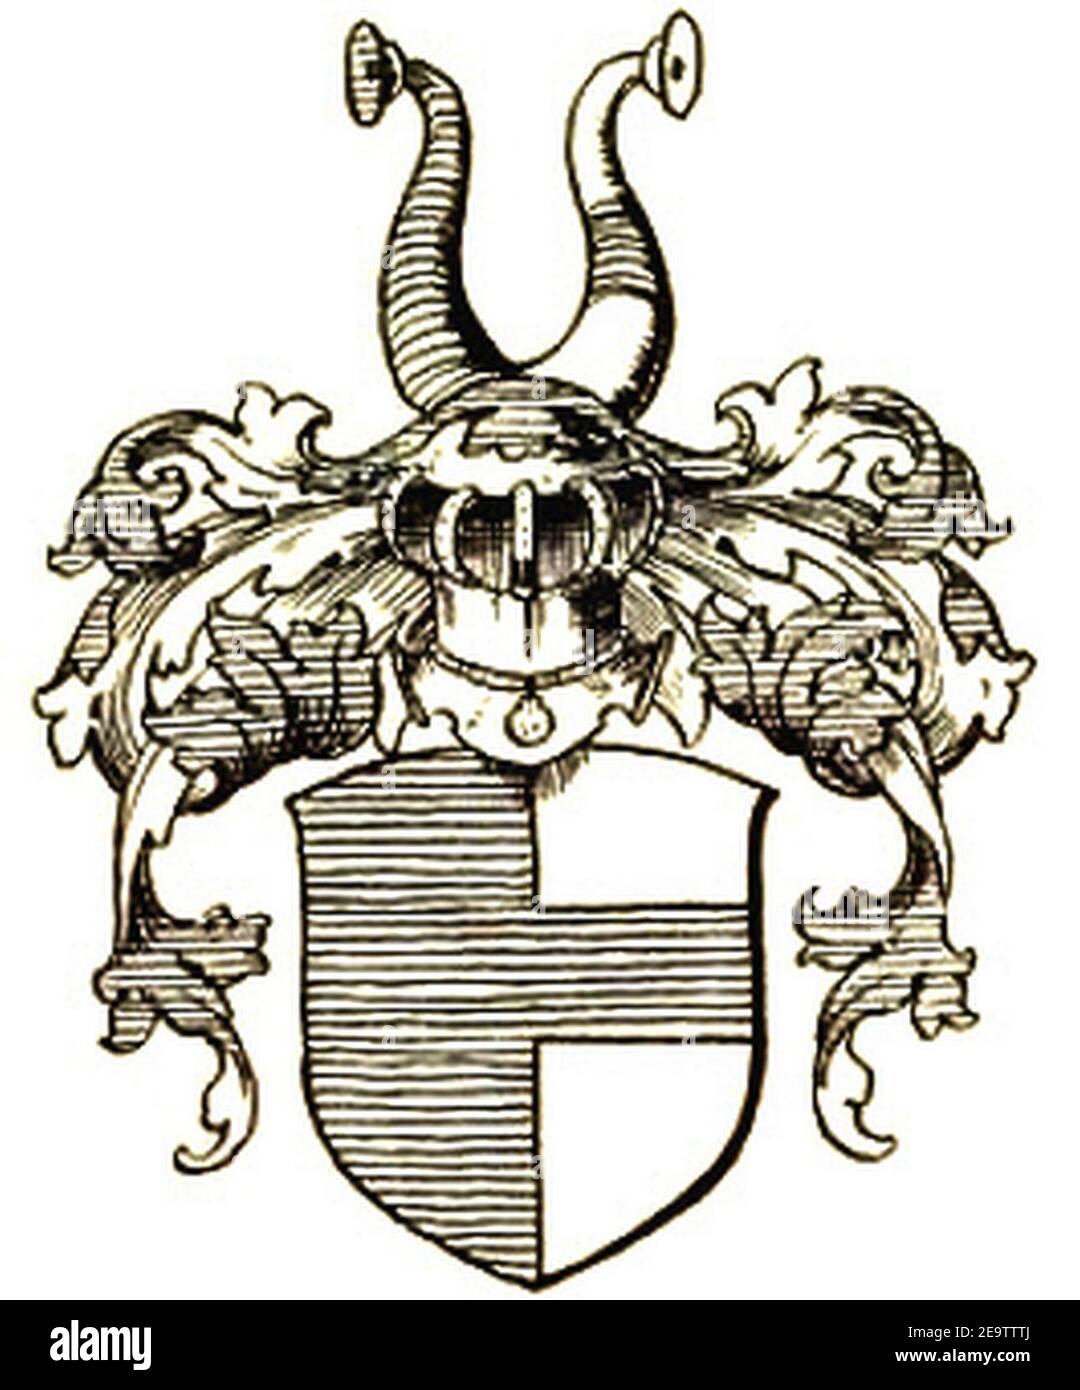 Nagel vda Schönstein Wappen NEW. Stock Photo